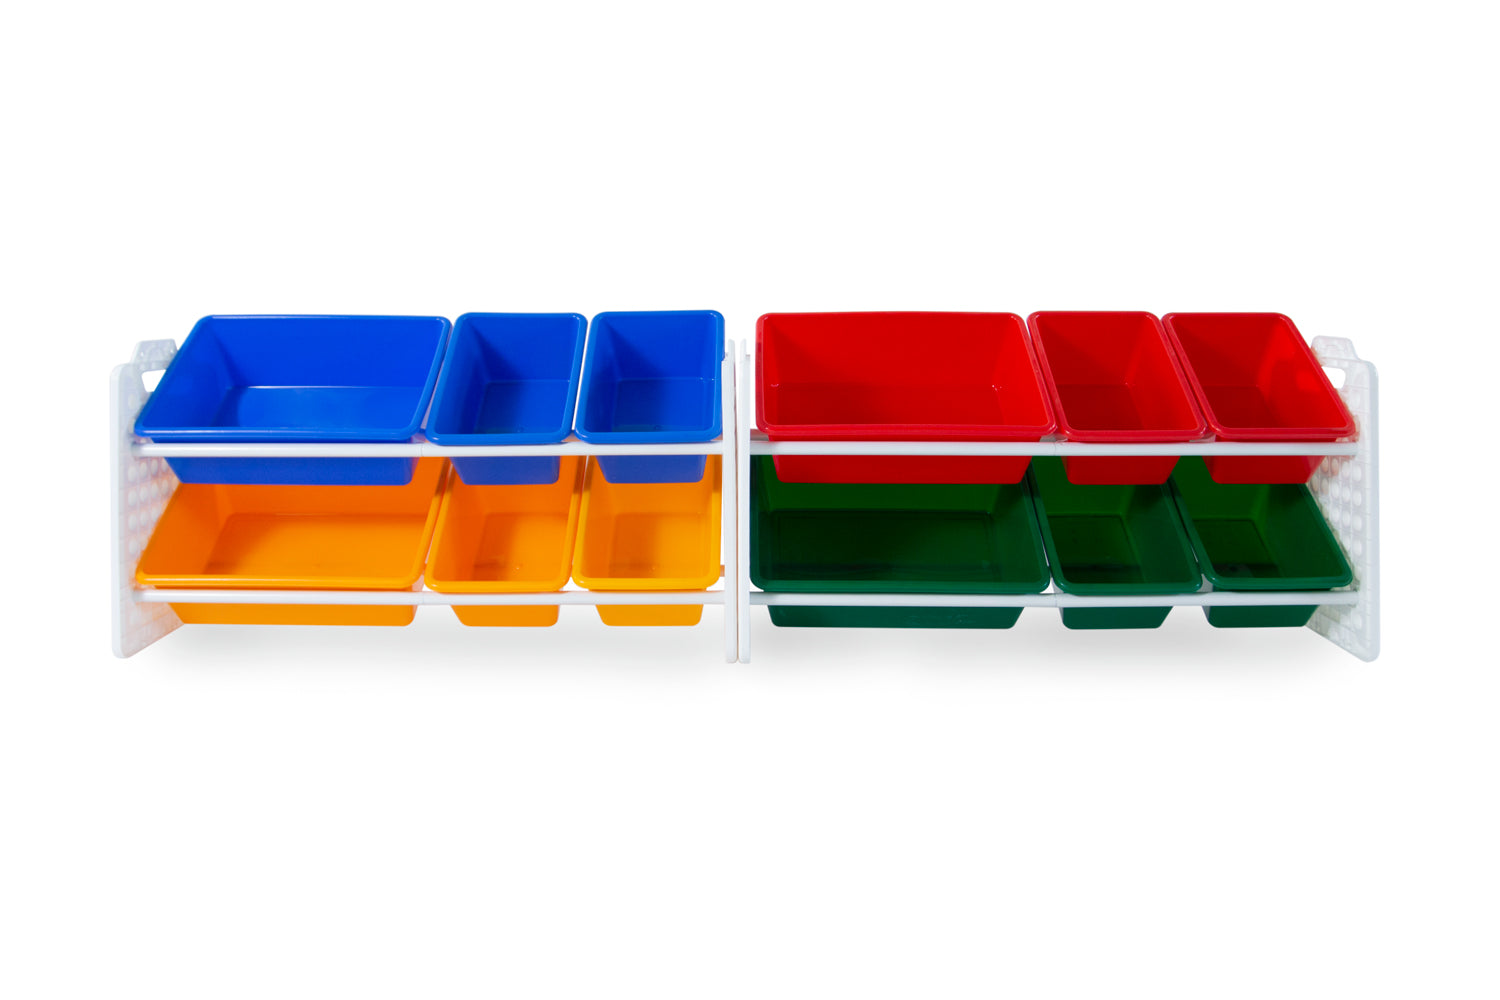 UNiPLAY 12 Bins Toy Storage Organizer - Primary (UB45621)